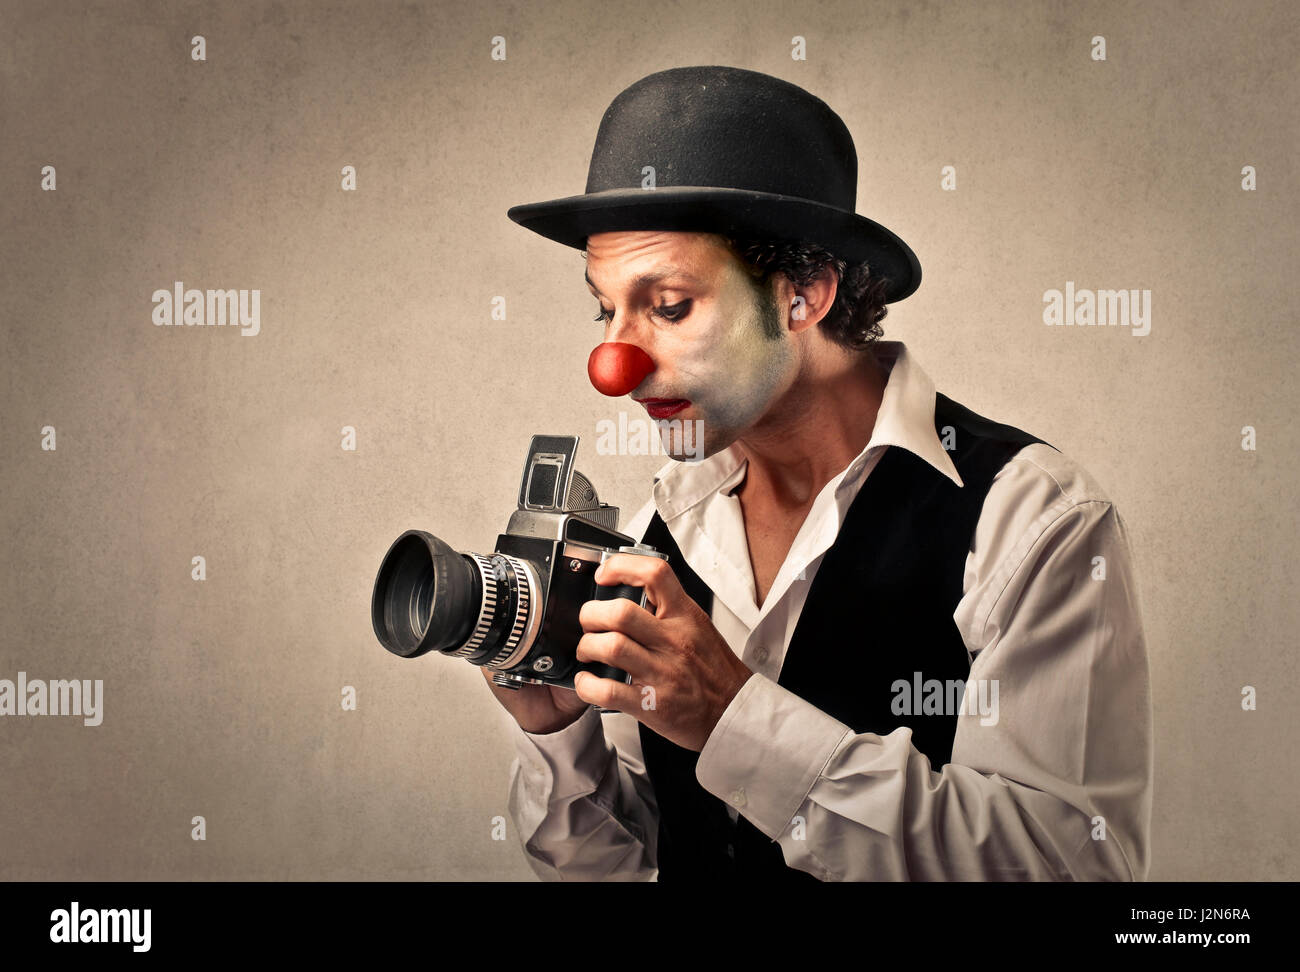 Homme clown avec appareil photo professionnel Banque D'Images